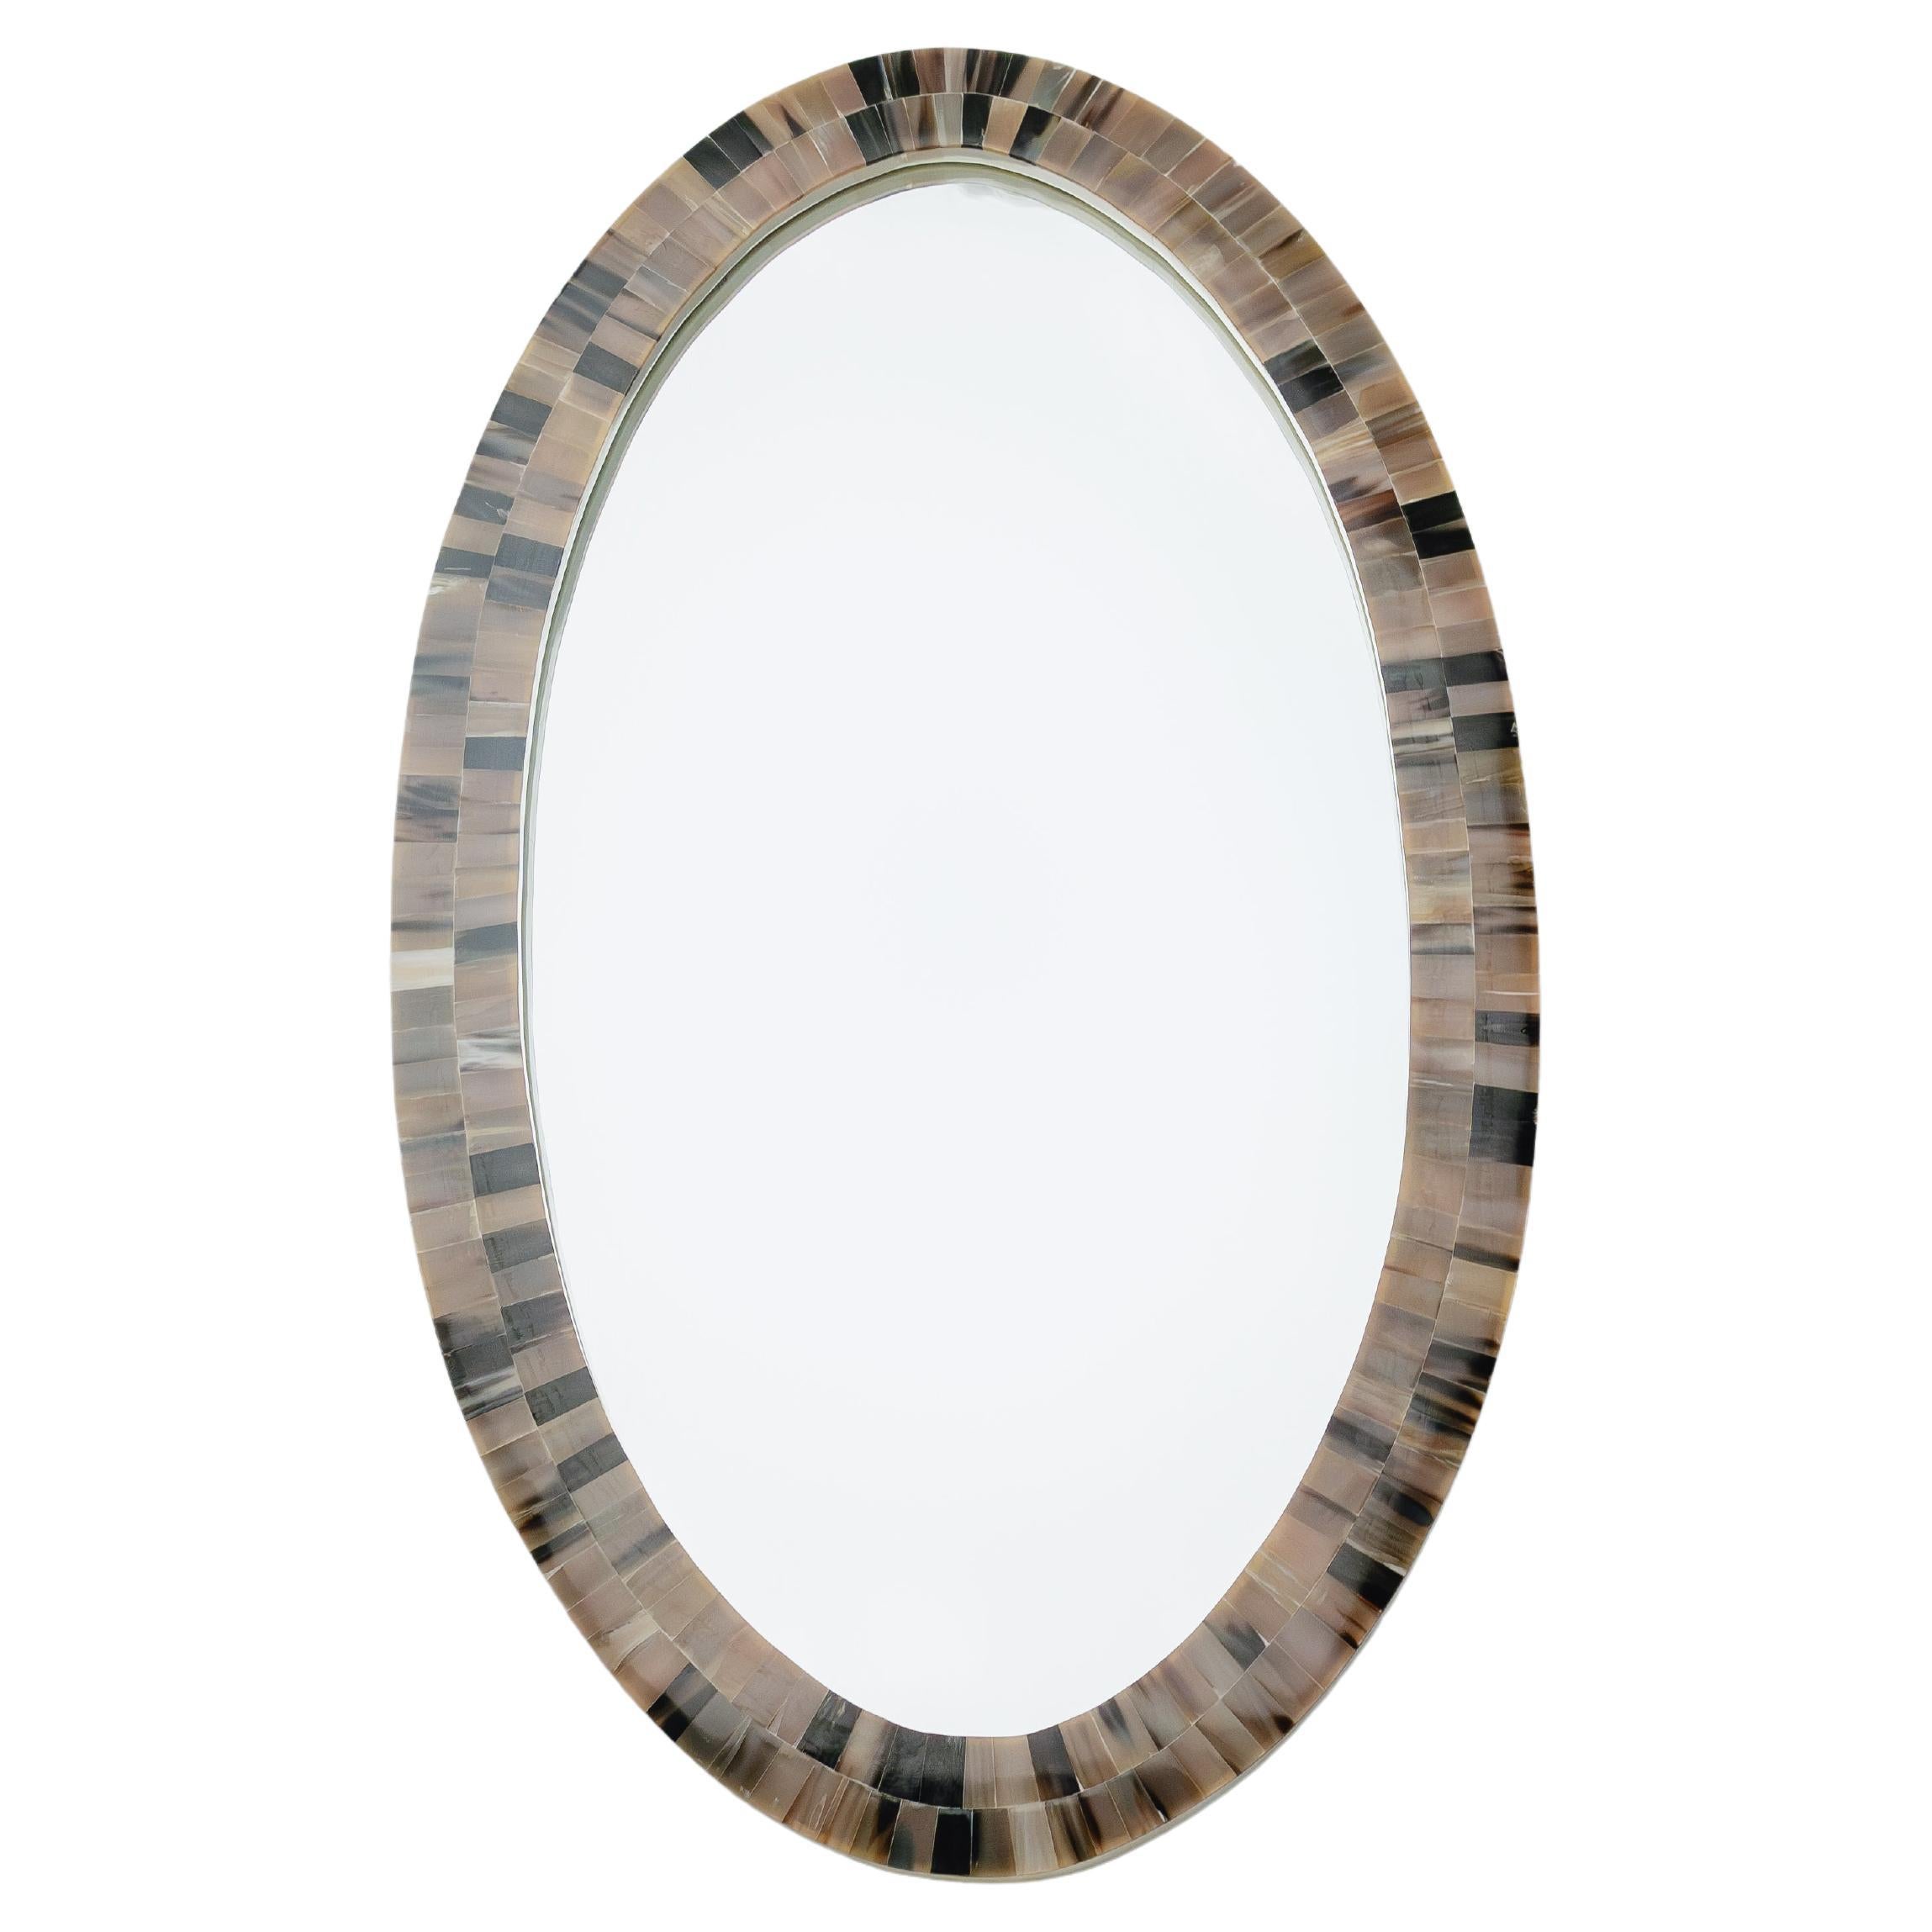 Der Orbit, der ovale Horn-Spiegel, ist ein Zeugnis der visionären Handwerkskunst von Farrago Design. Mit seiner perfekten ovalen Form bietet er eine Vielseitigkeit, die jeden Raum, von großen Fluren bis hin zu intimen Räumen, mit einem Hauch von